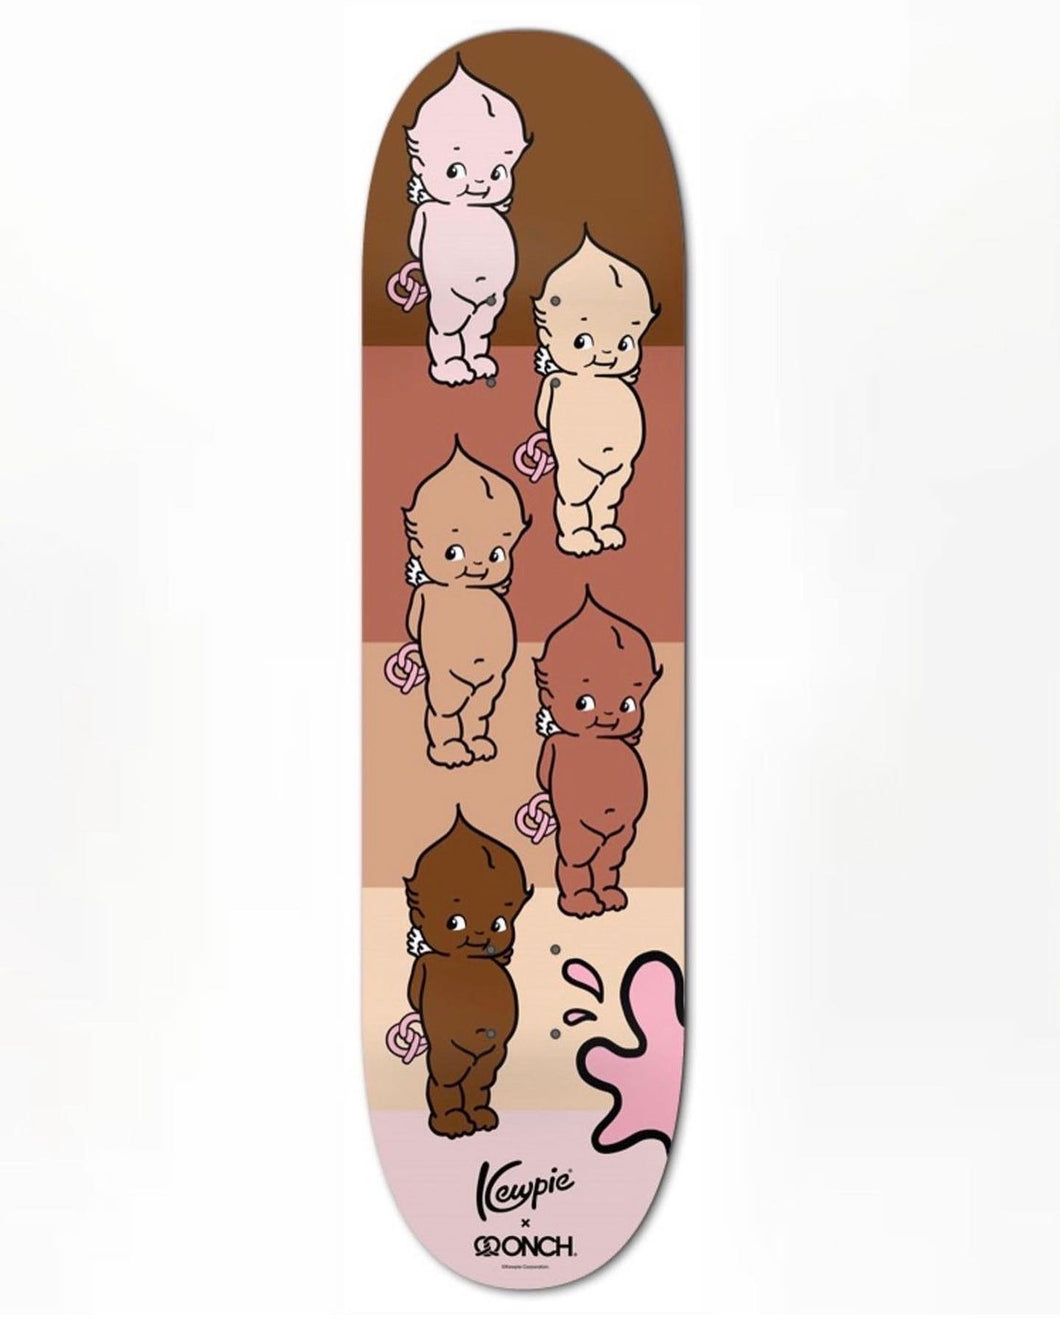 Kewpie x ONCH Skateboard Deck